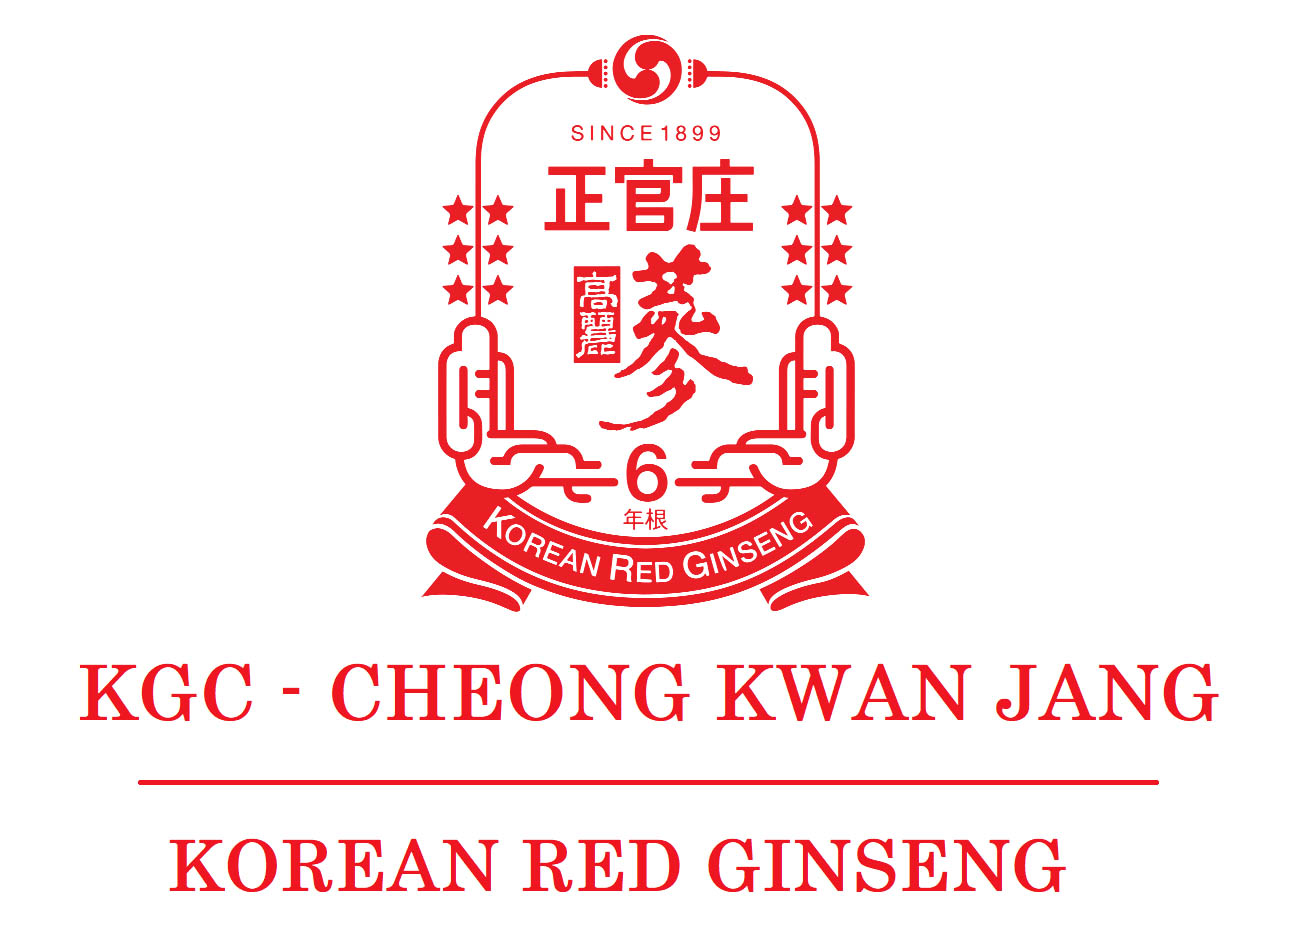 Thương hiệu hồng sâm KGC Cheong Kwan Jang